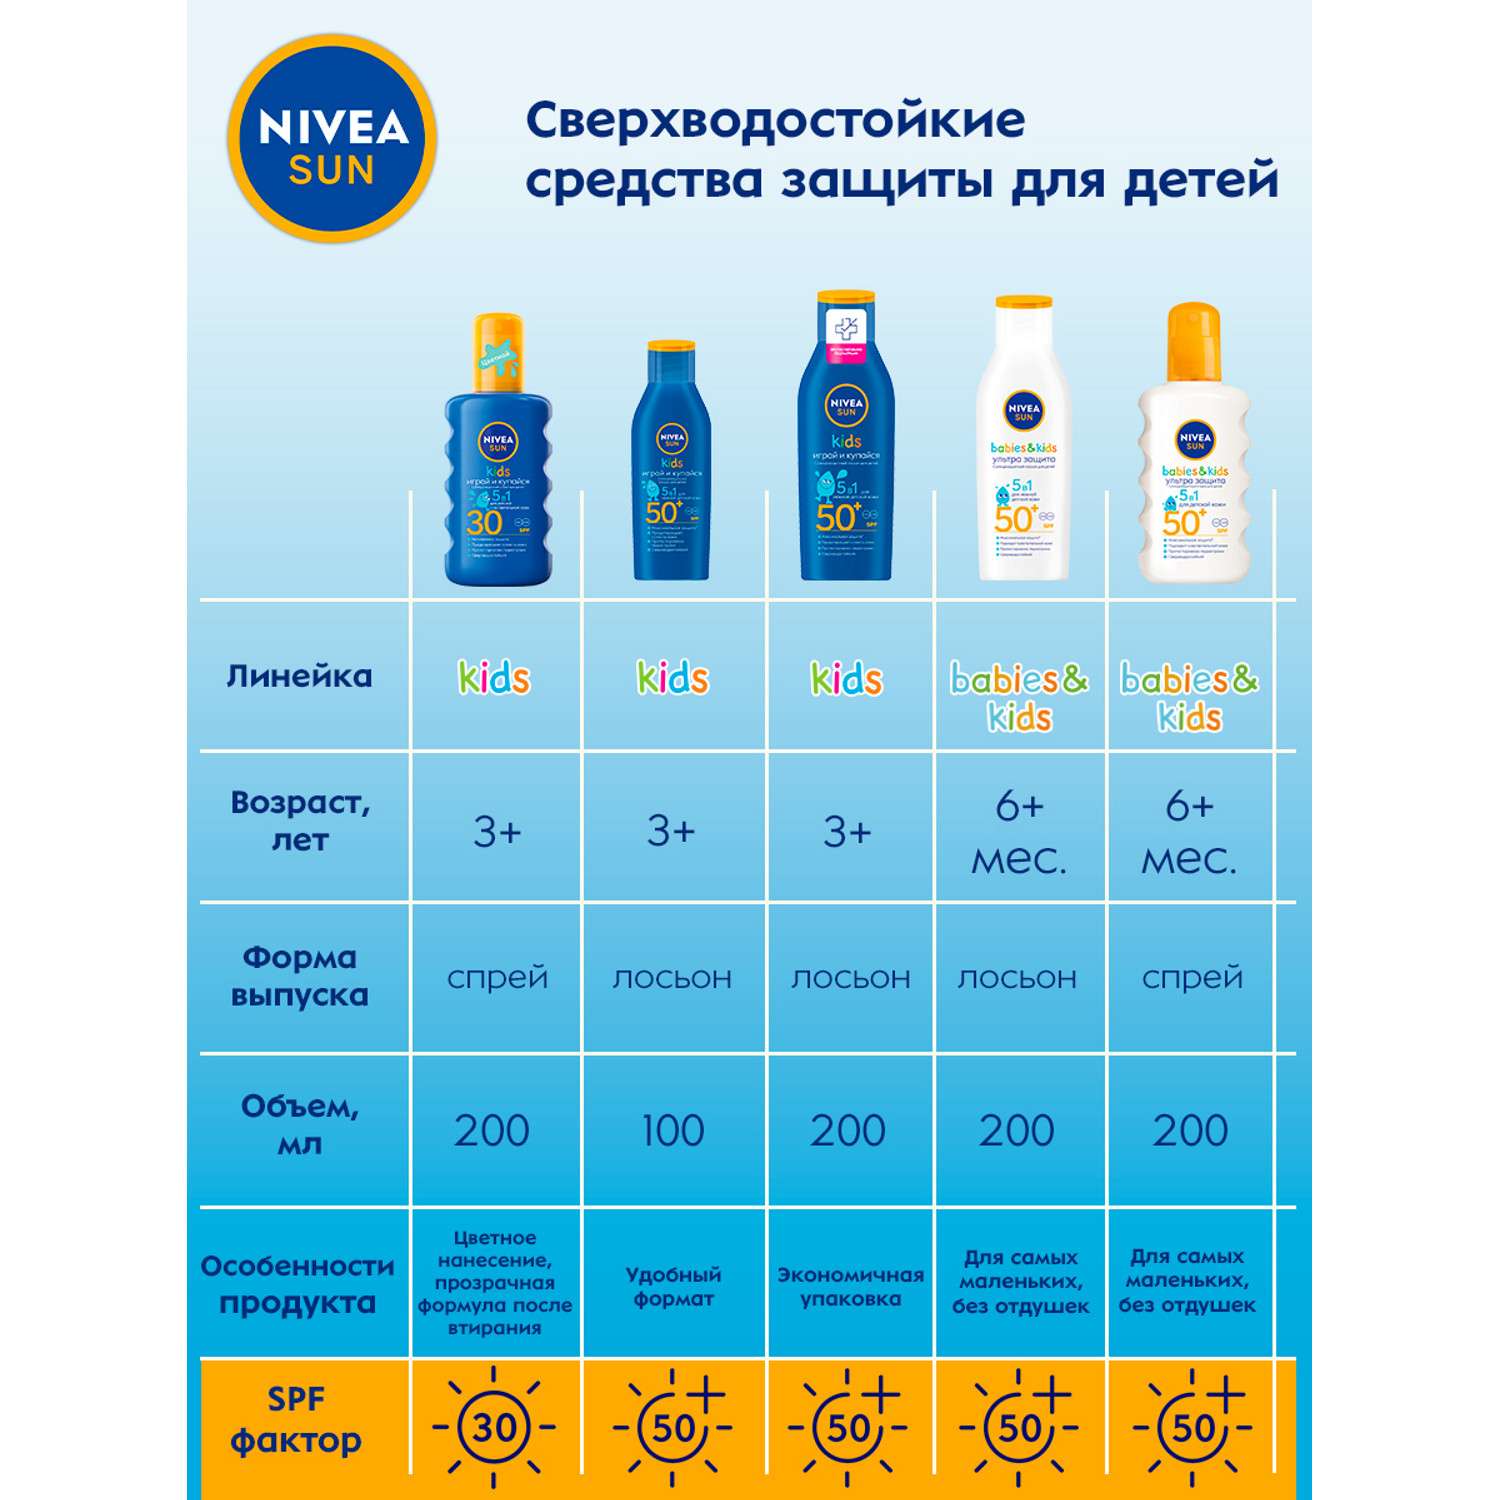 Спрей солнцезащитный Nivea Sun SPF 50+ Ультра защита для чувствительной кожи 200мл - фото 7